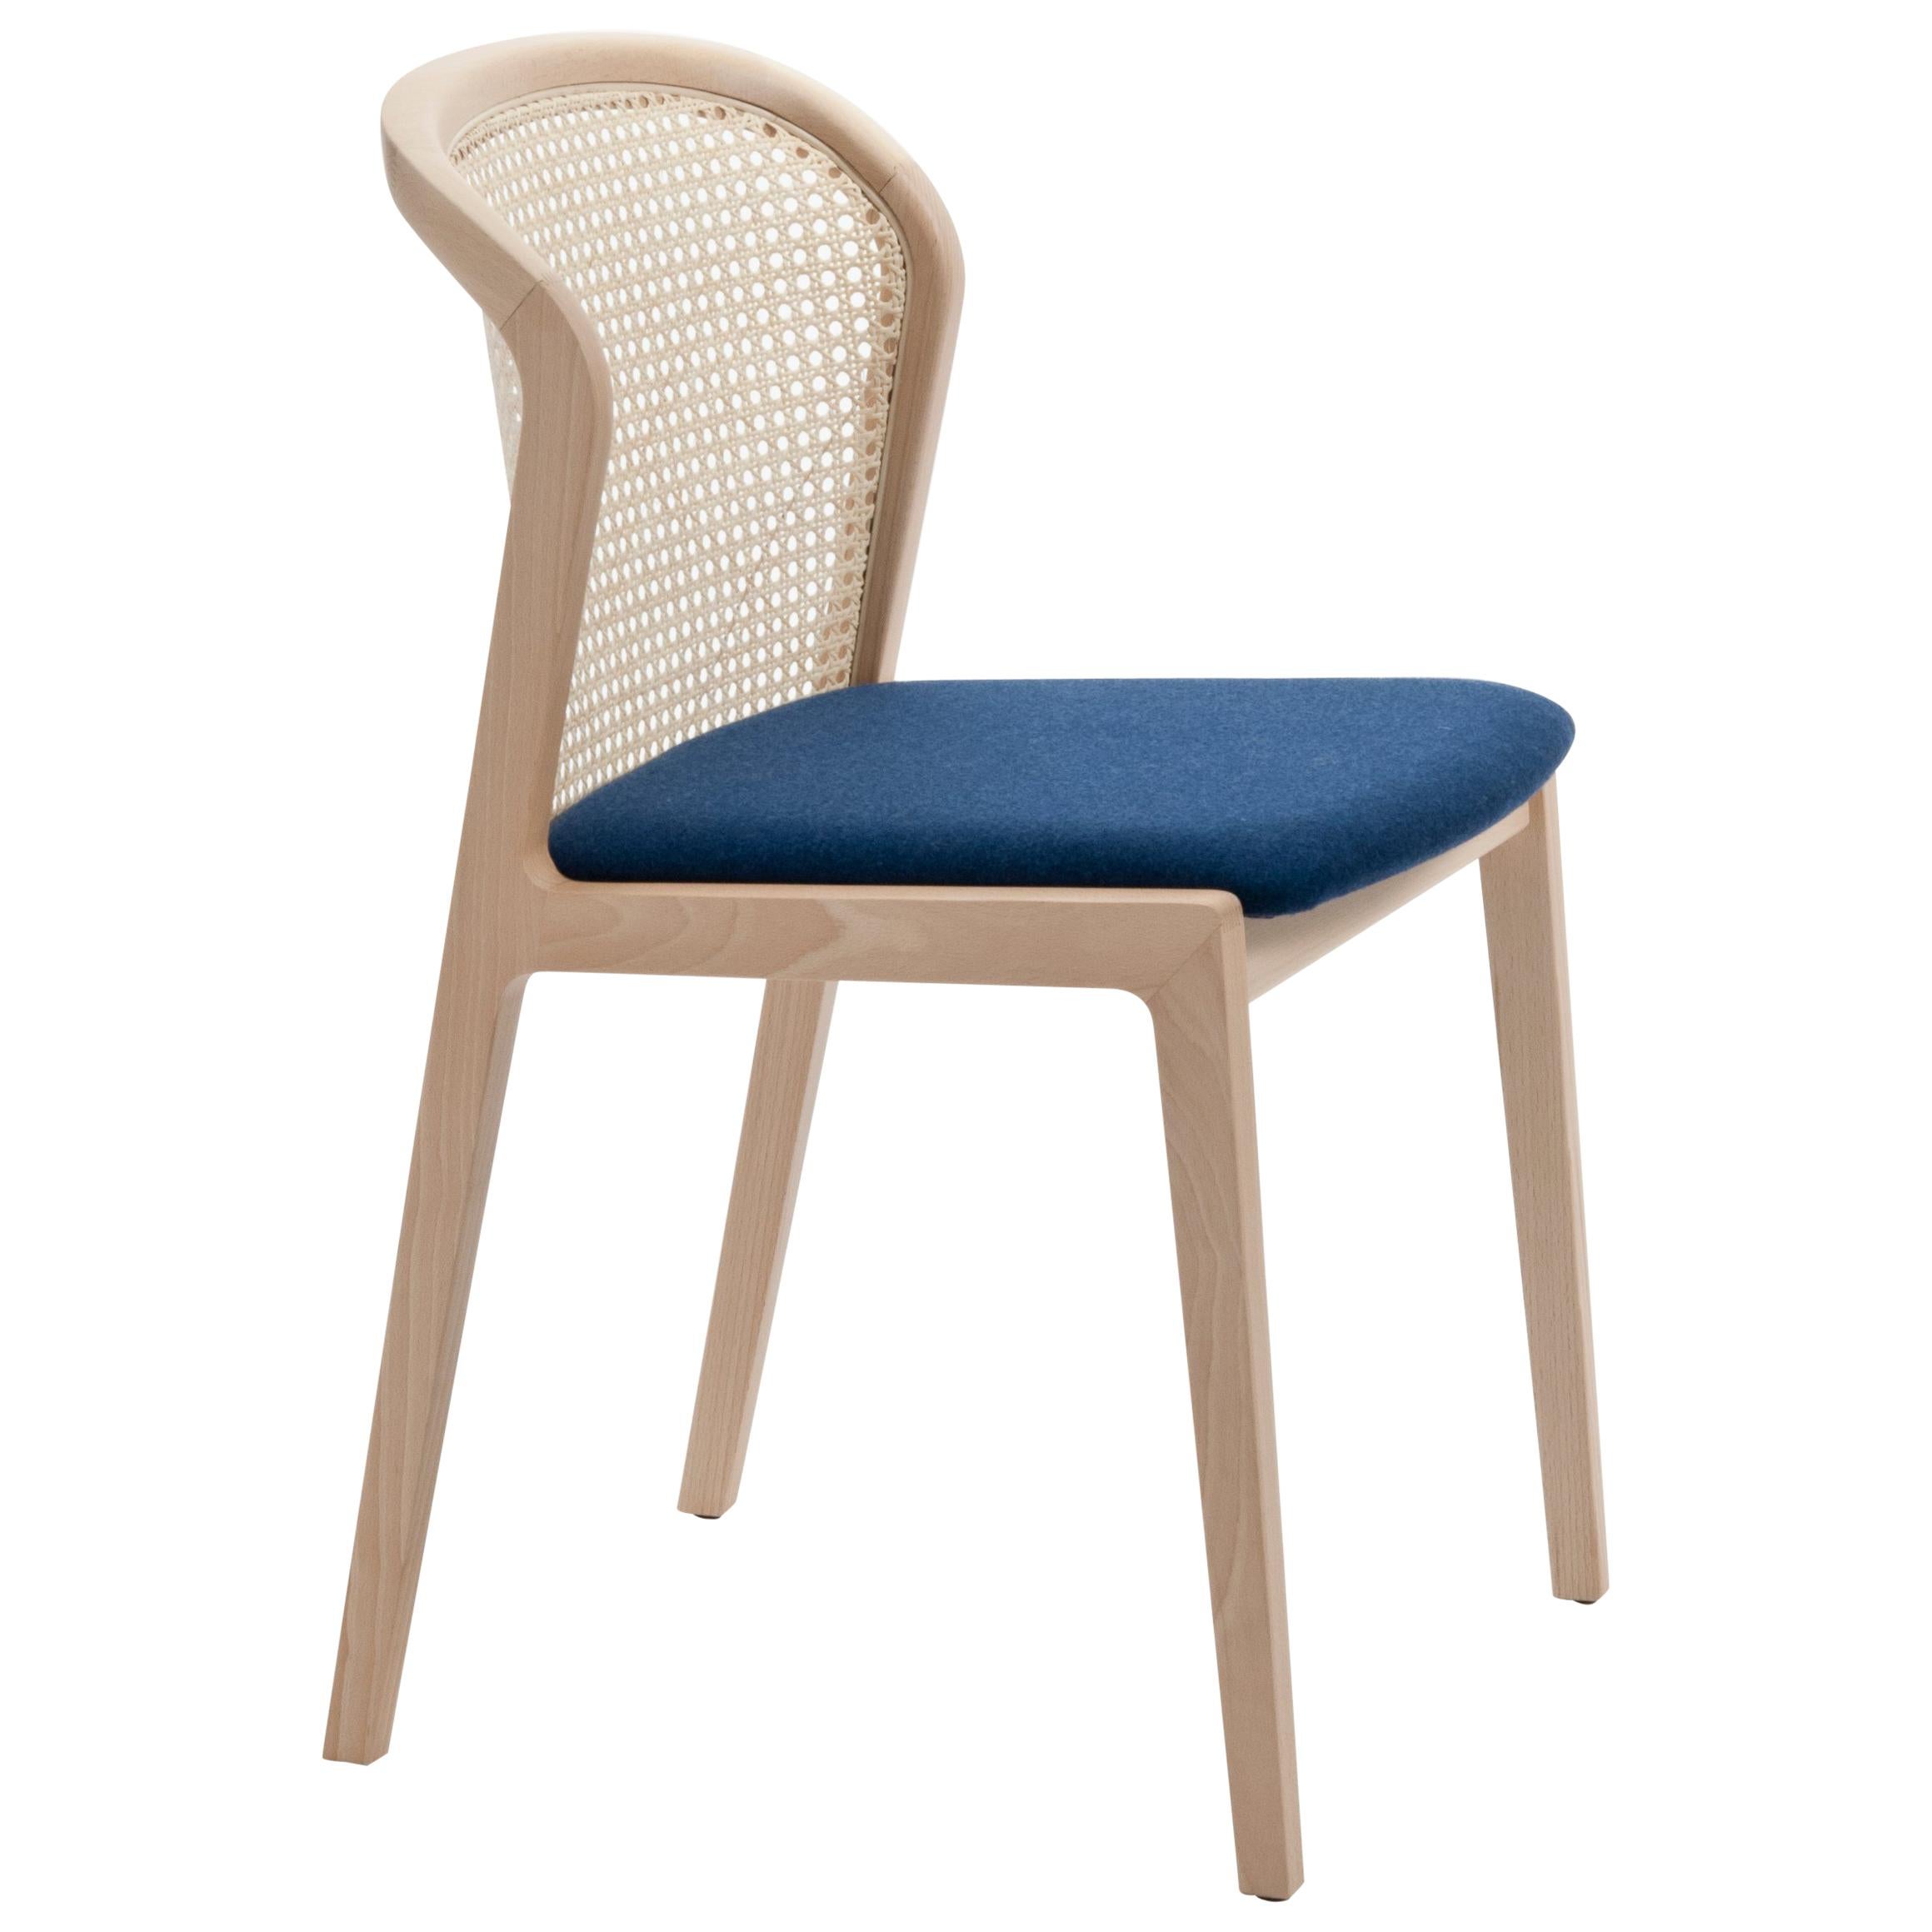 Chaise Vienna de Col, design moderne en bois et paille, assise tapissée bleue en vente